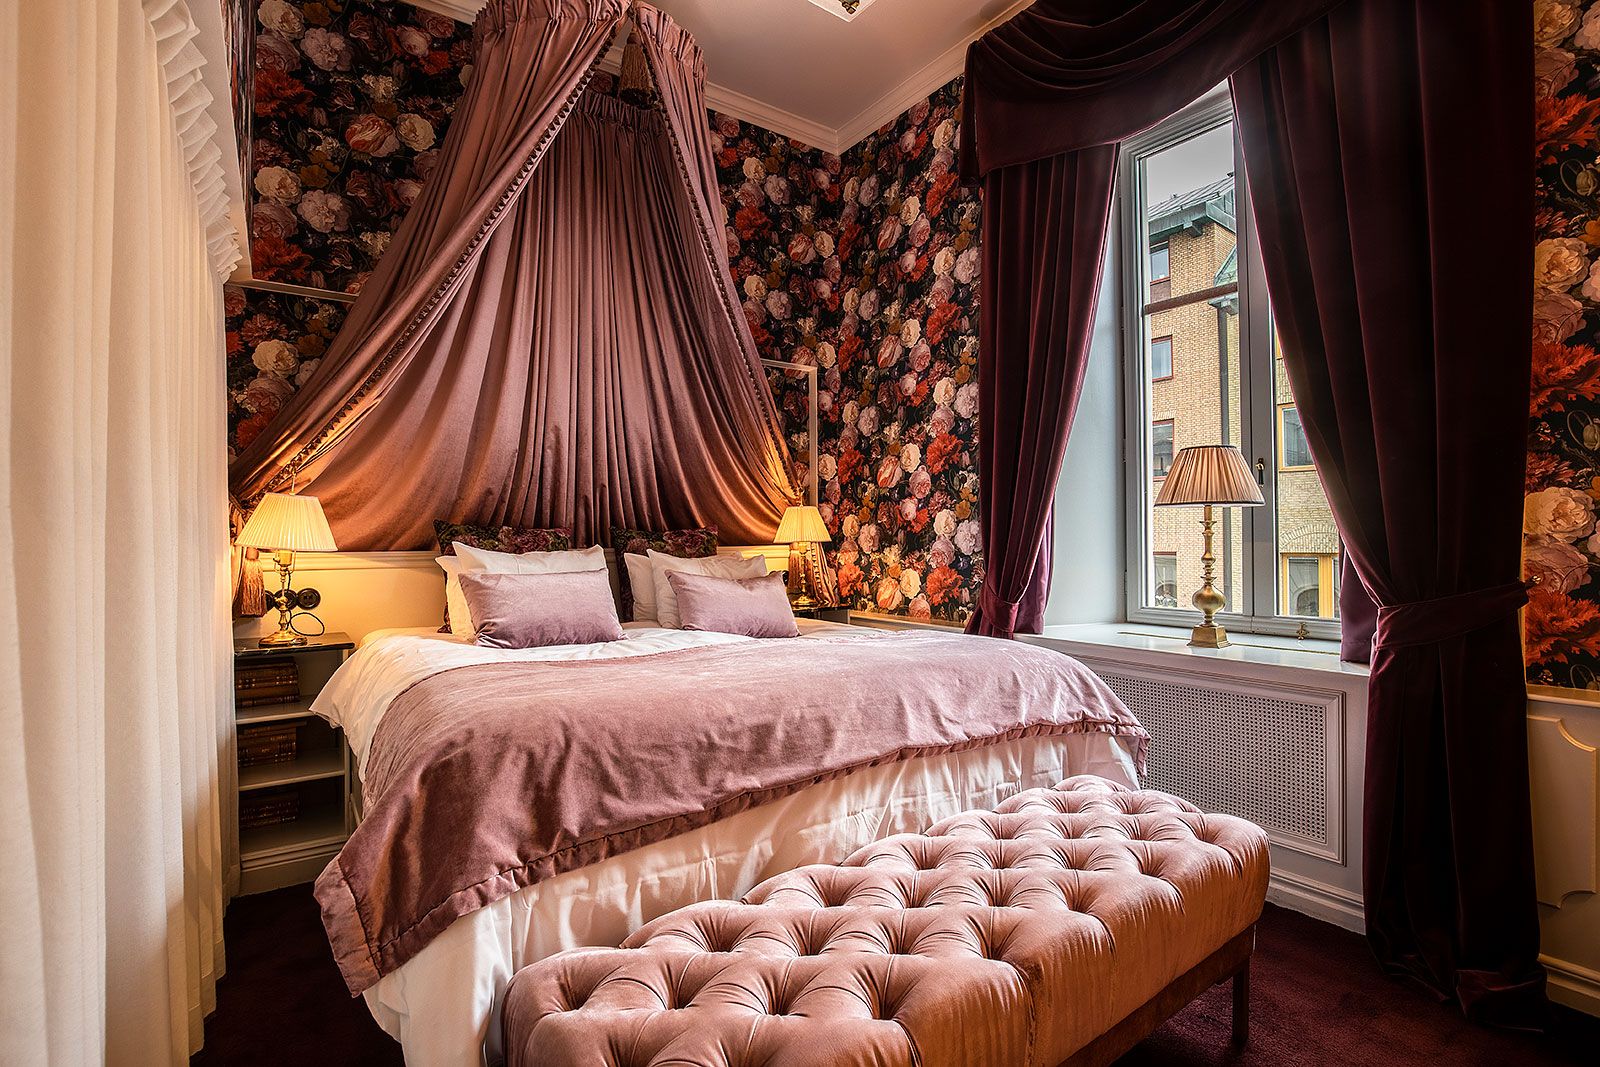 Hotel Pigalle – Gothenburg's best hotels